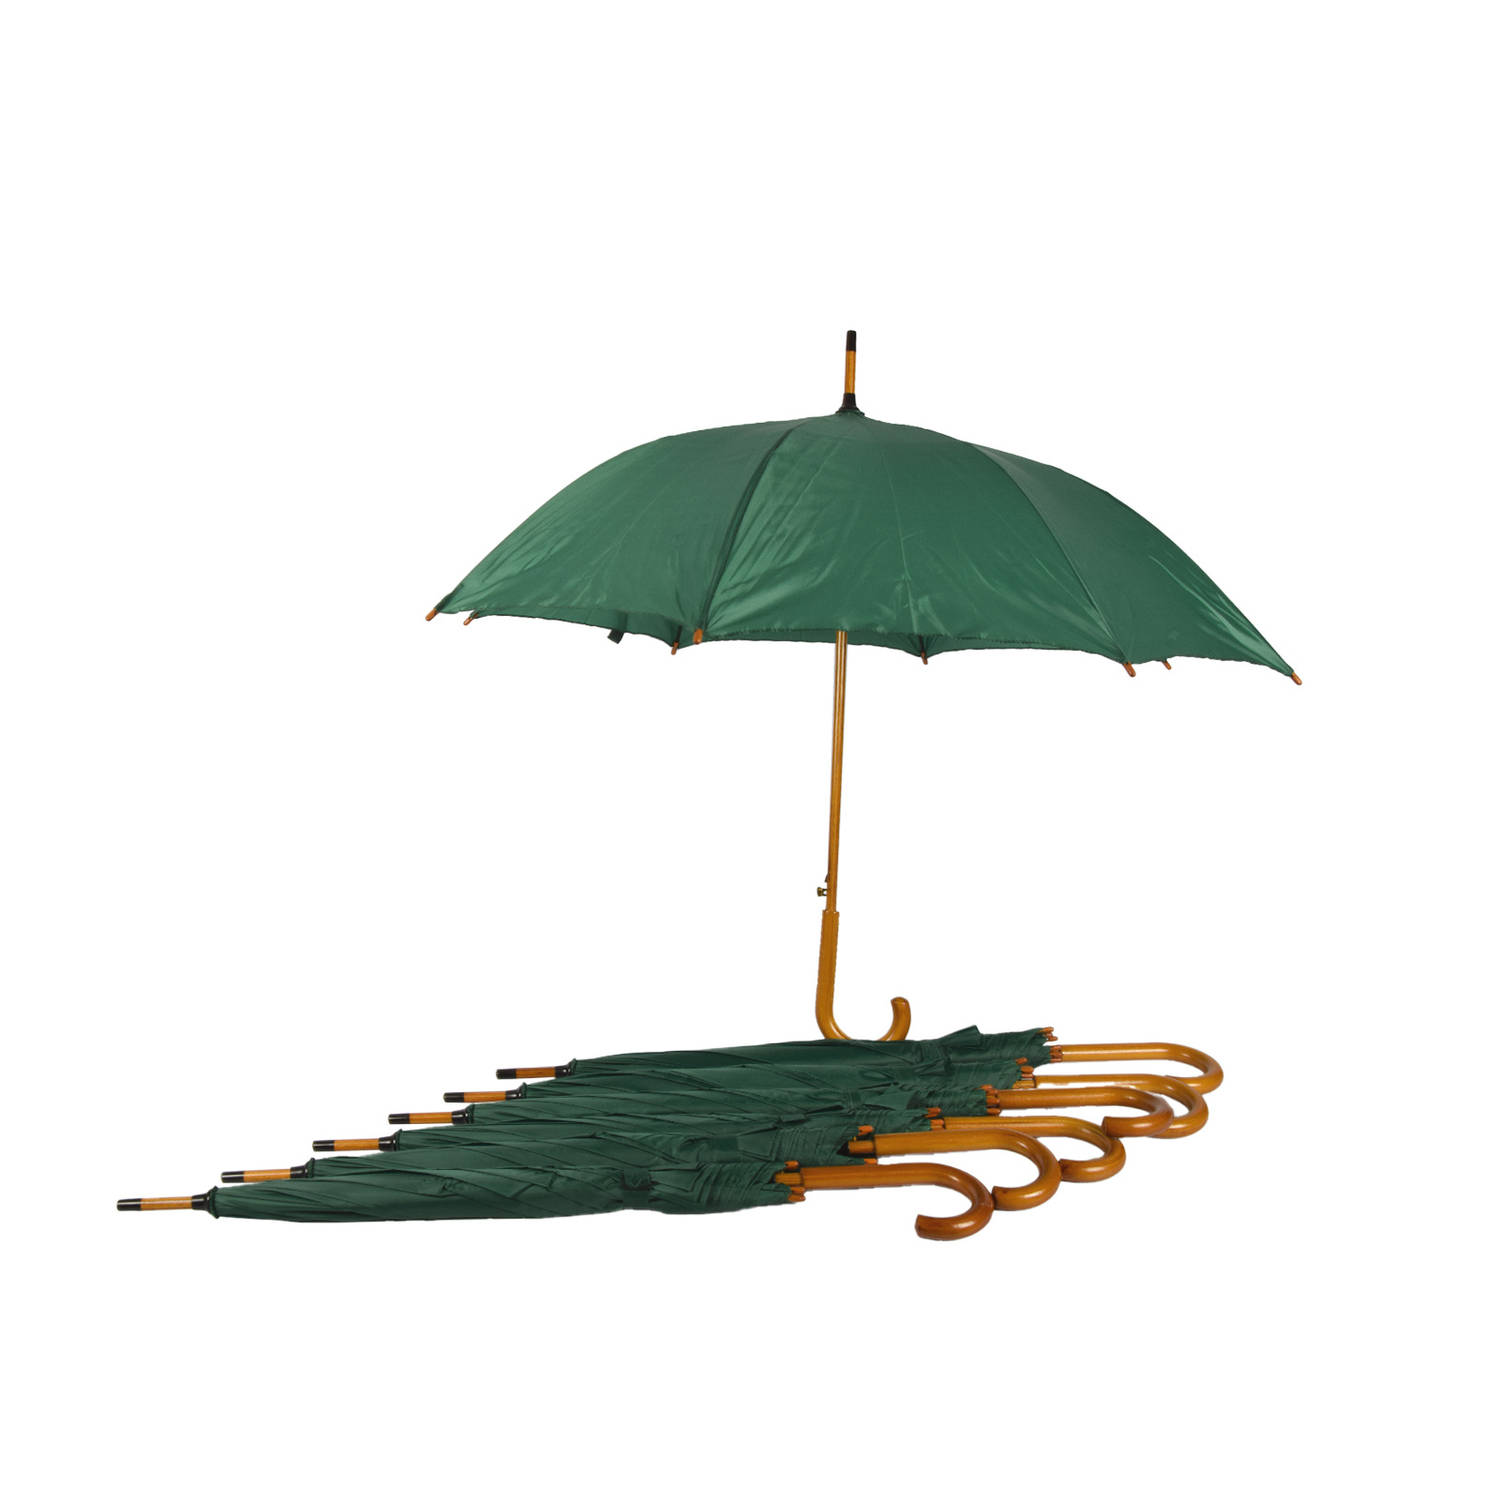 Set van 7 Groene Automatische Opvouwbare Paraplu's | Duurzaam en Stijlvol voor Volwassenen | 102cm Diameter - Inspiratie uit het Schotse Landschap!